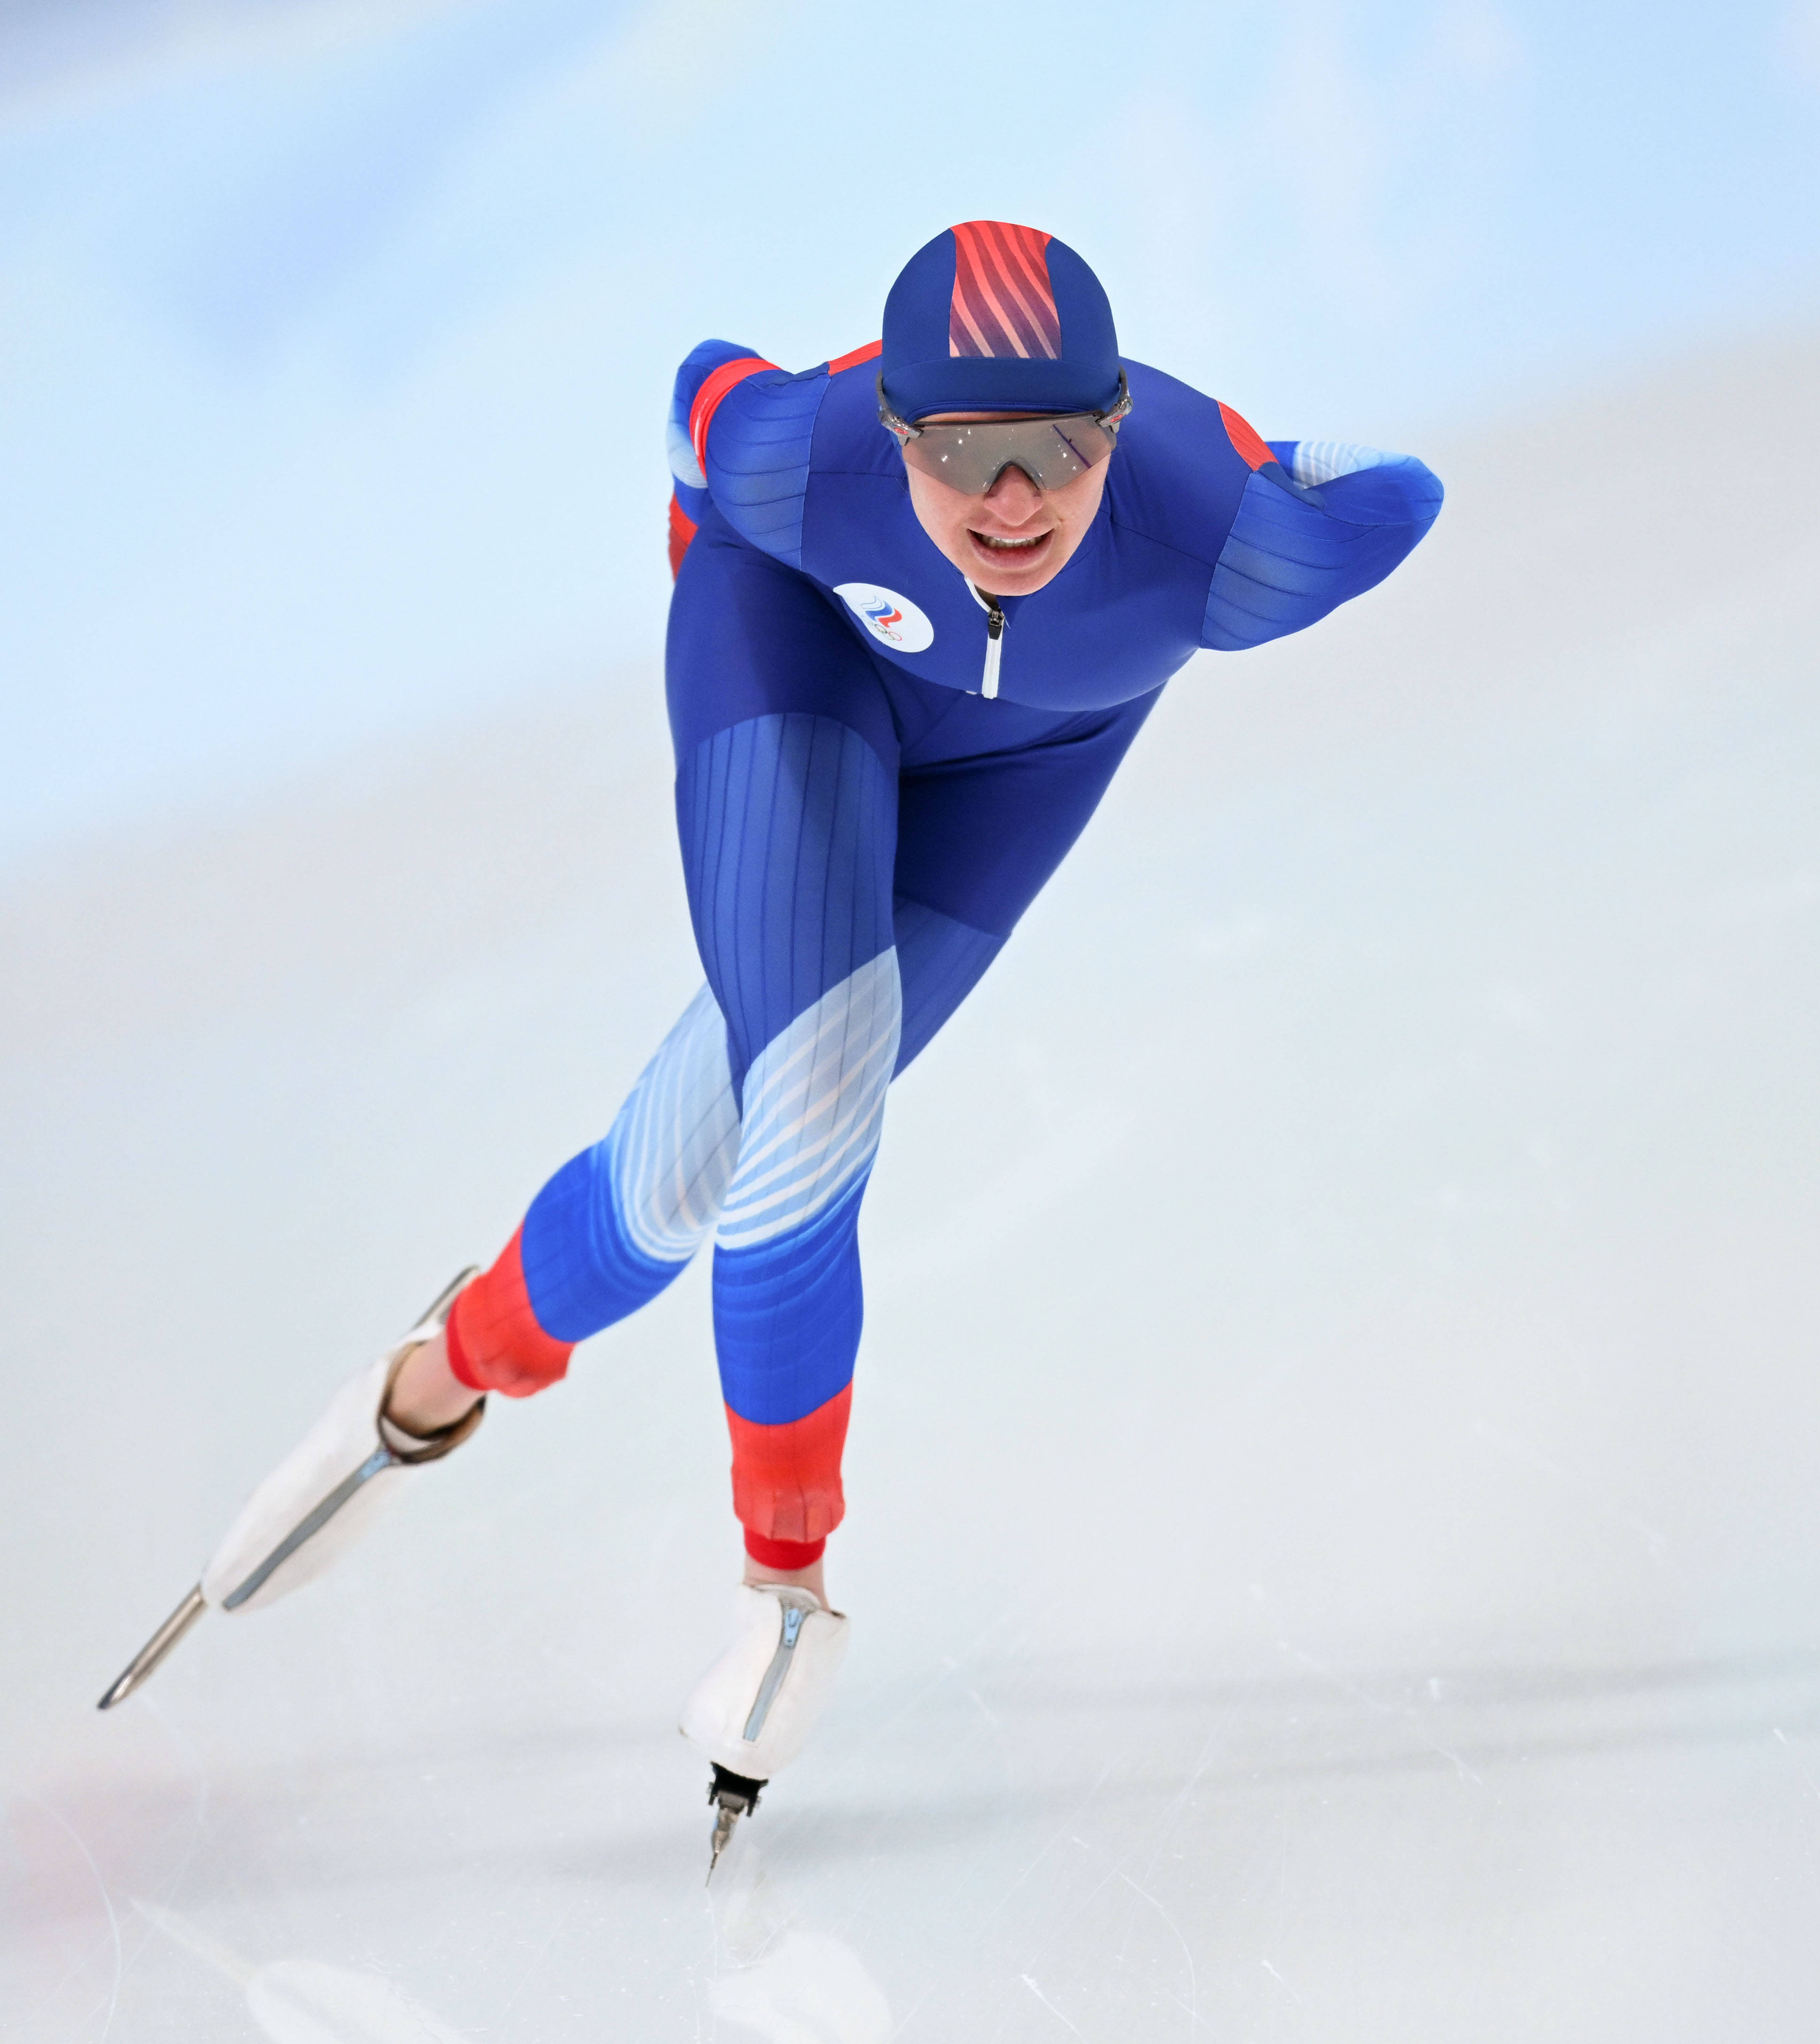 程婷婷 摄当日,北京2022年冬奥会速度滑冰女子5000米比赛在国家速滑馆